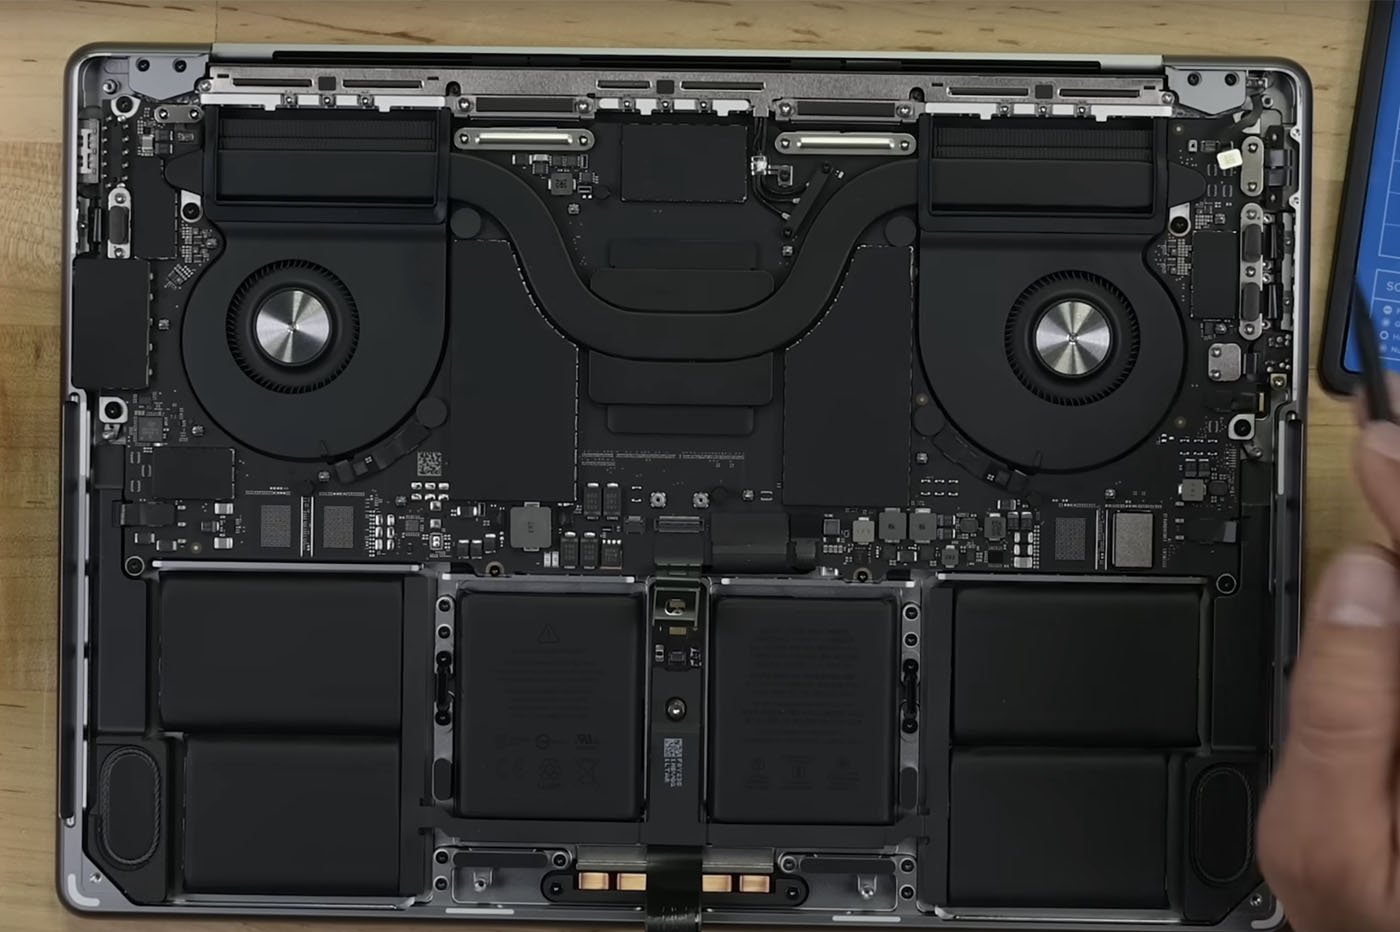 MacBook Pro 2023